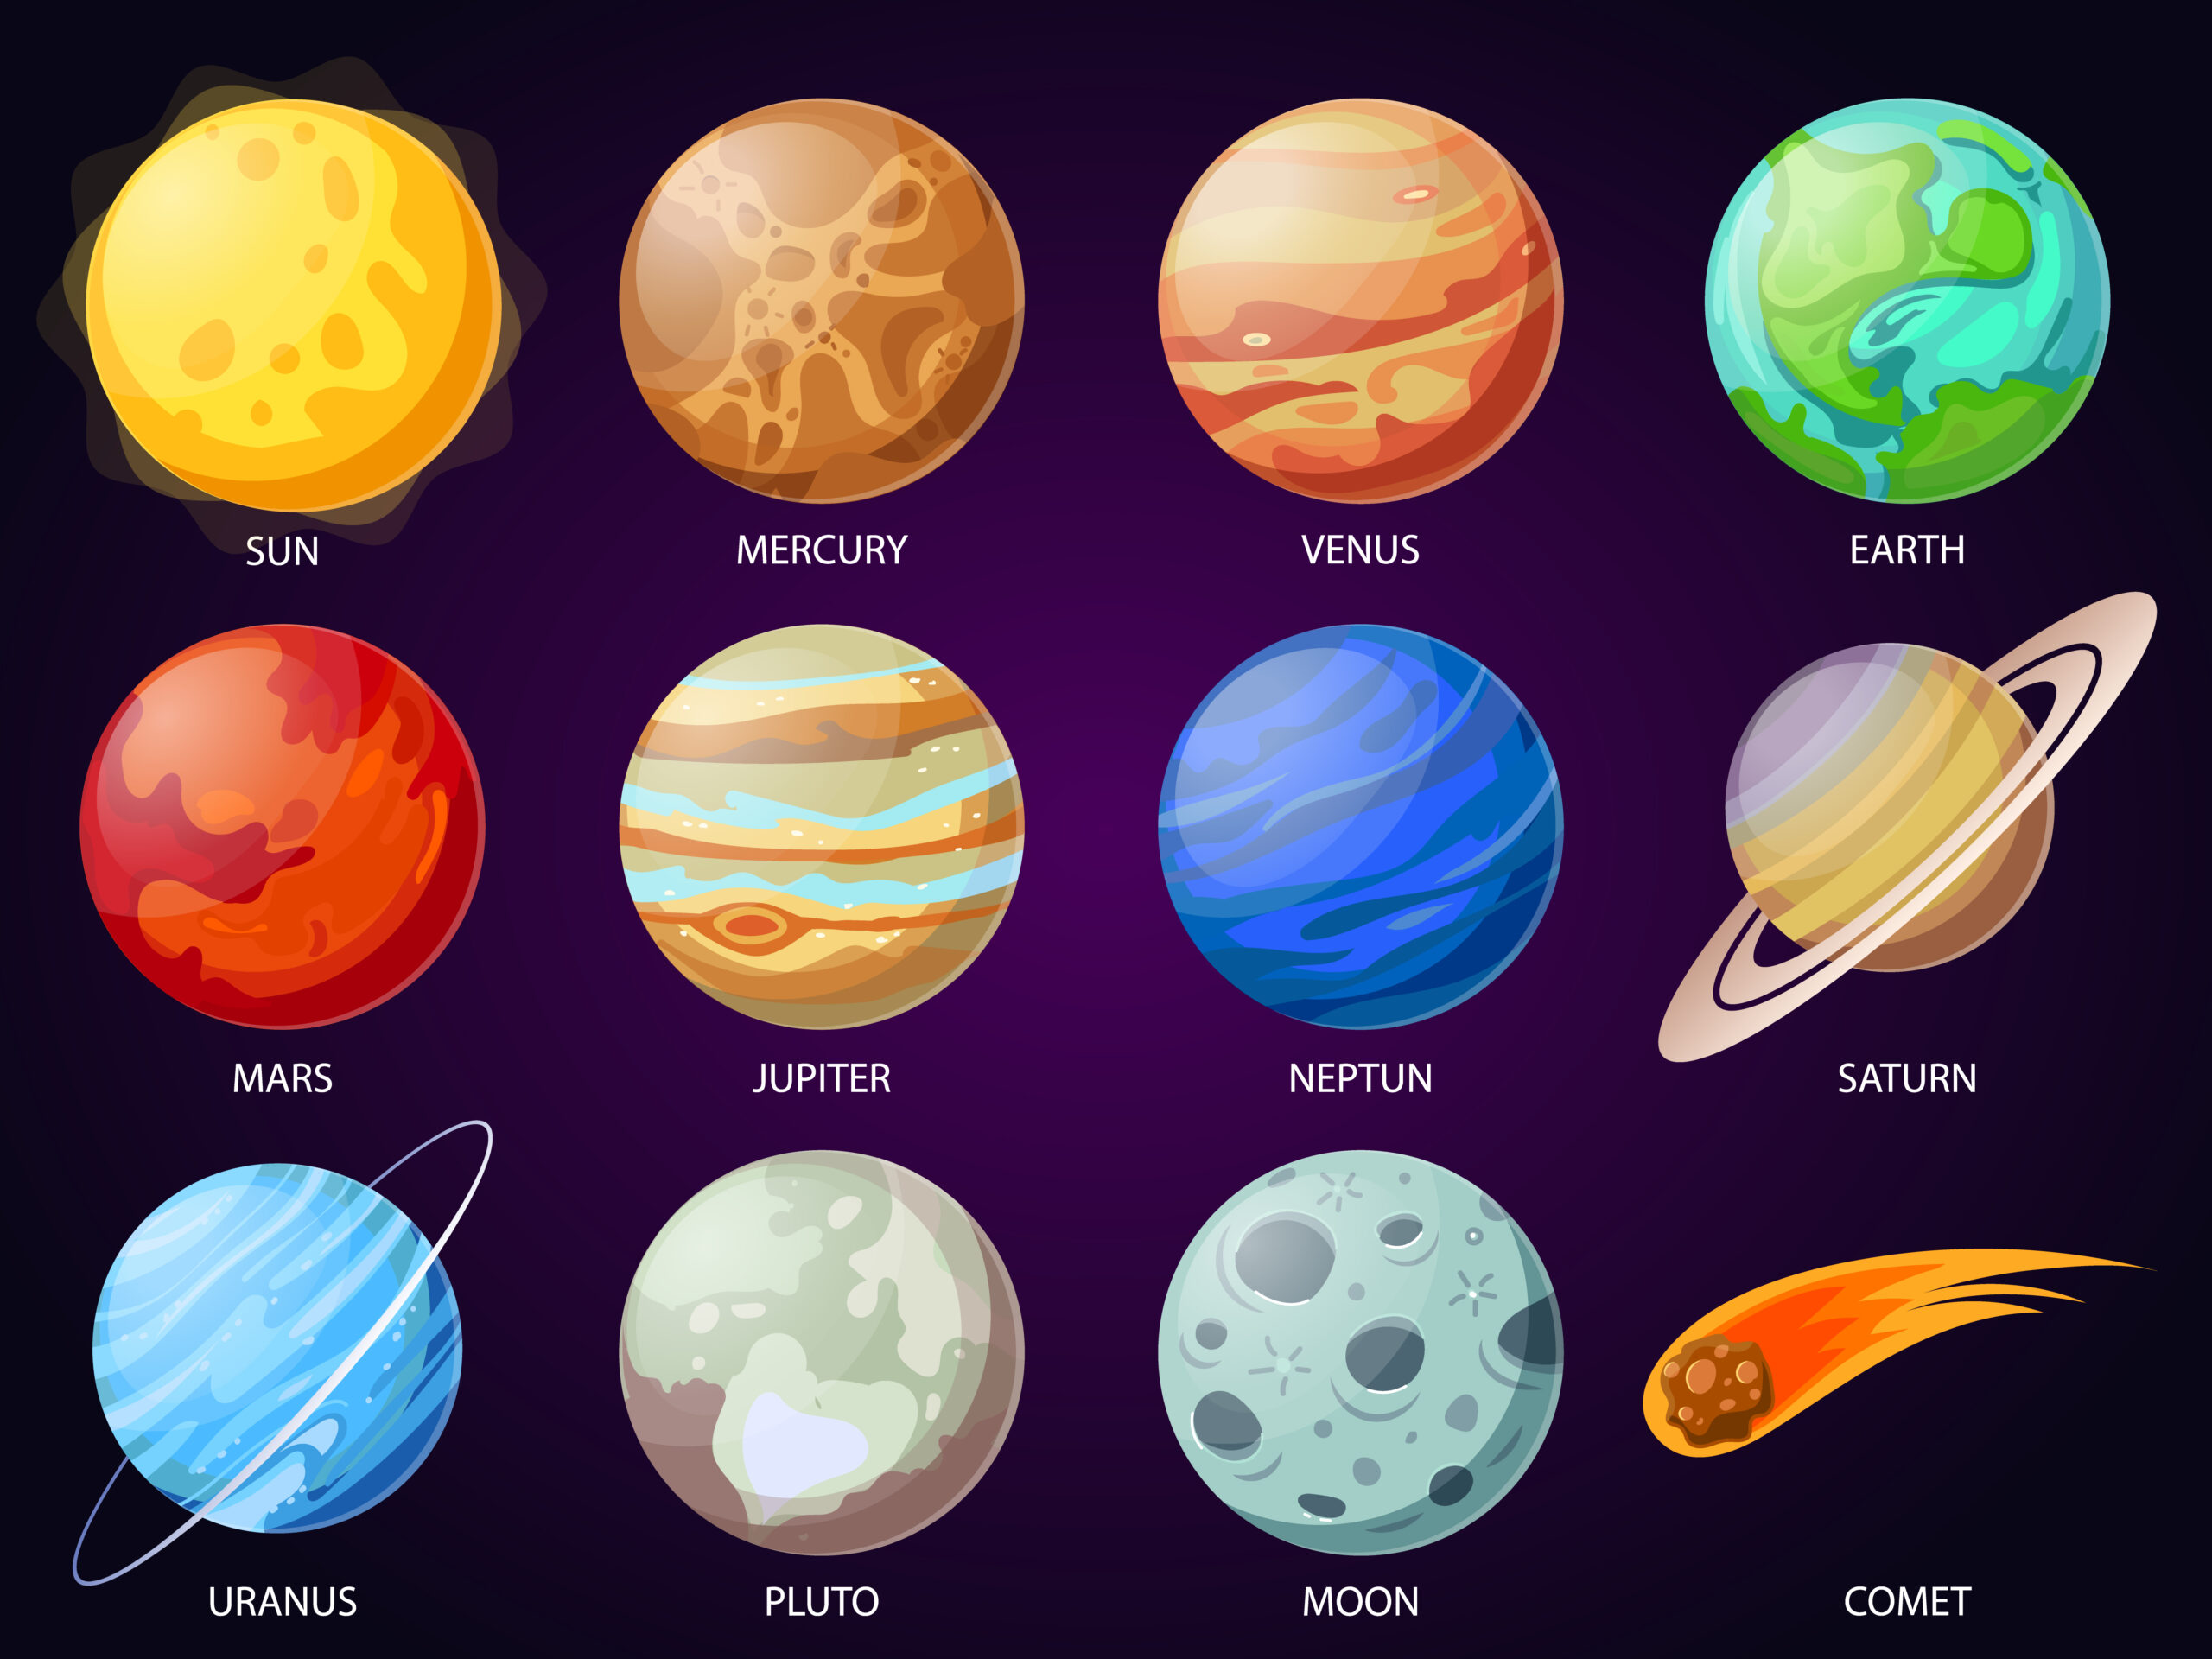 Quelle est la signification des planètes dans l’horoscope ?